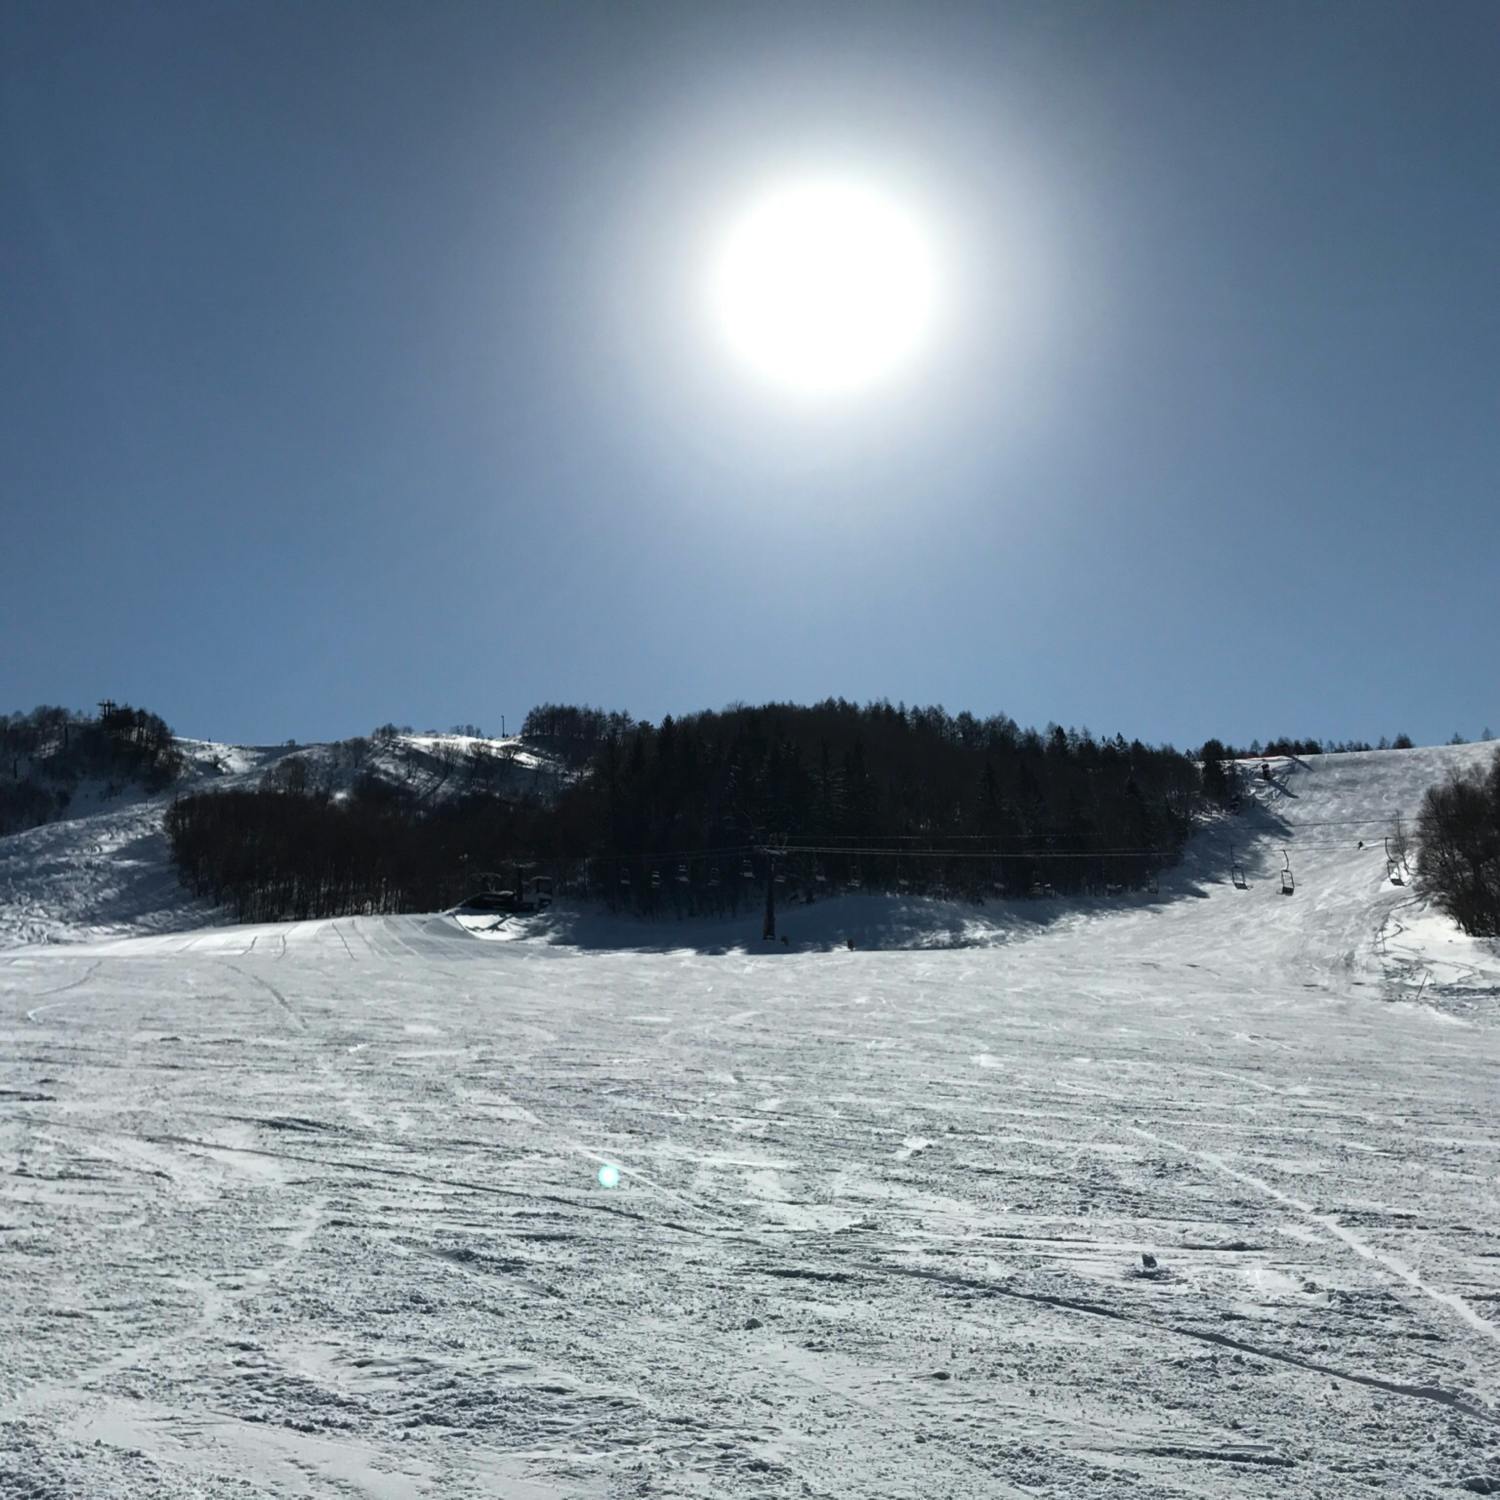 湯の丸スキー場の投稿写真 感想 みどころ 湯の丸スキー場長野県東御市のスキー場です なだらかなコー トリップノート